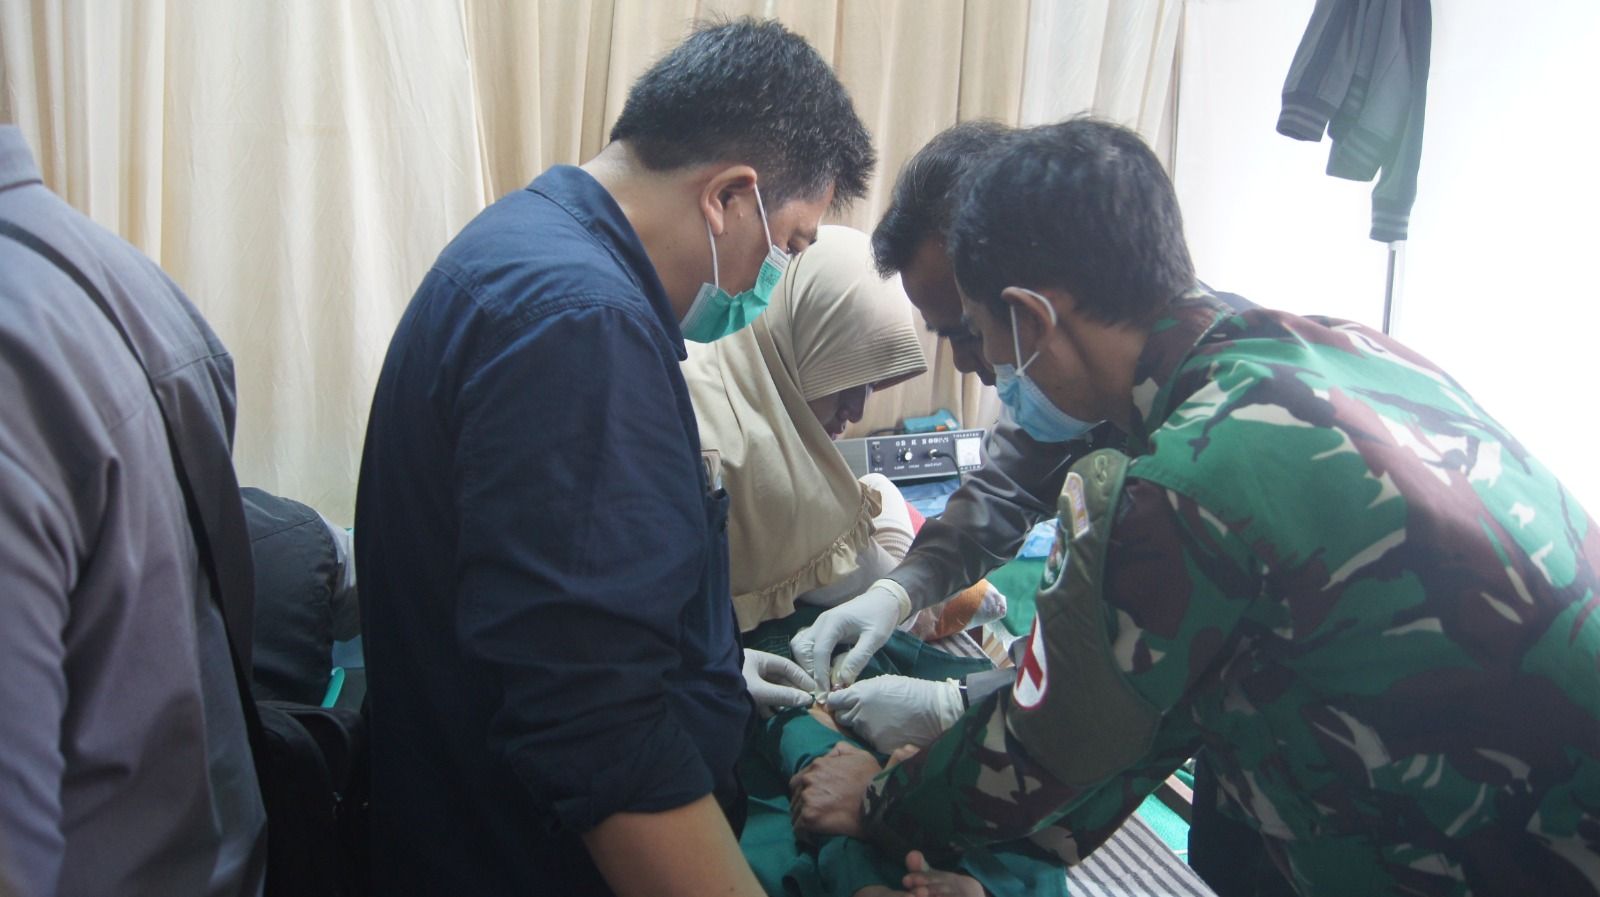 Tenaga Medis yang di bantu TNI dan Polri melaksanakan khitanan massal kepada puluhan anak